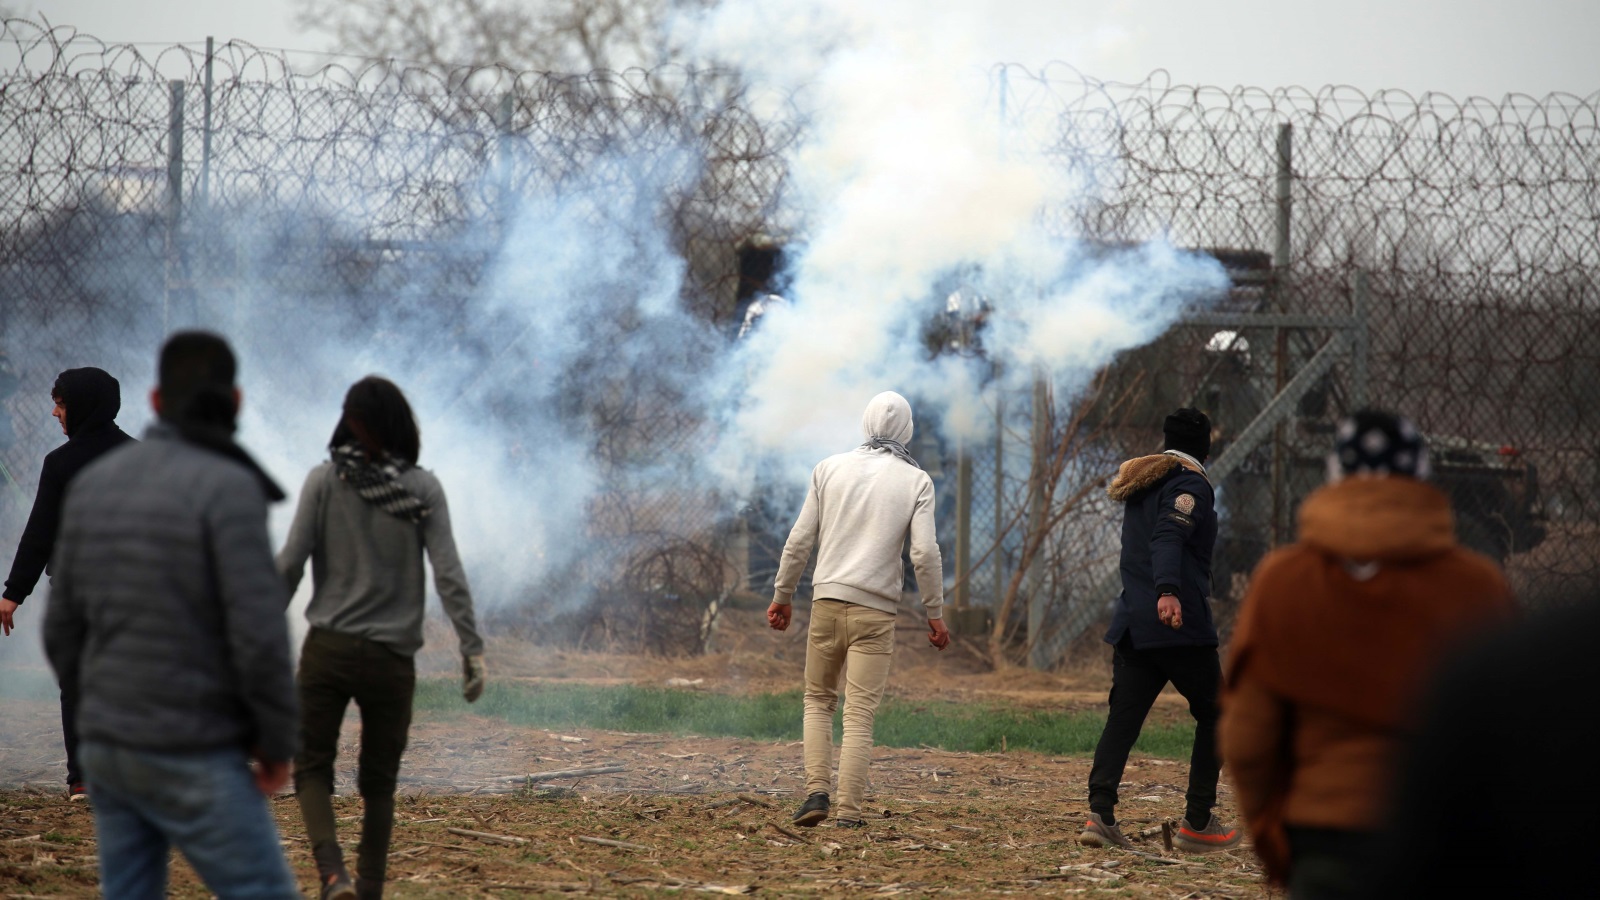 ‪الأمن اليوناني يطلق قنابل الغاز لتفريق اللاجئين والمهاجرين‬ (وكالة الأناضول)